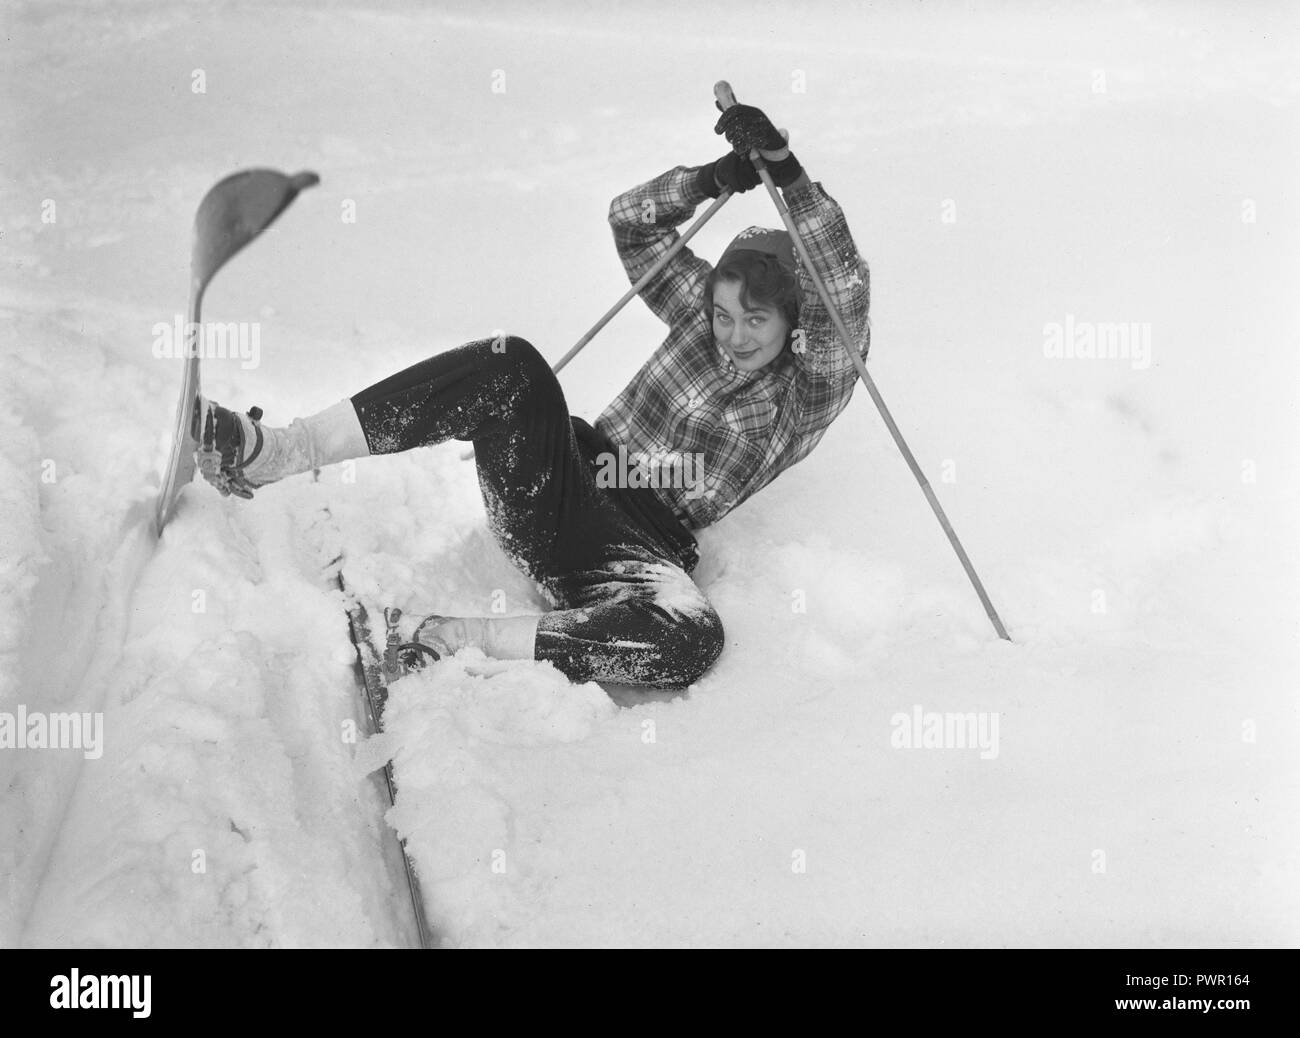 L'hiver dans les années 40. Abrite Également une actrice, 1925-1957 Torén, sur un hiver dans la neige. Elle est tombée et qu'il essaie de se lever sur le skis de nouveau. La Suède des années 40. Kristoffersson Photo ref 198 A-4 Banque D'Images